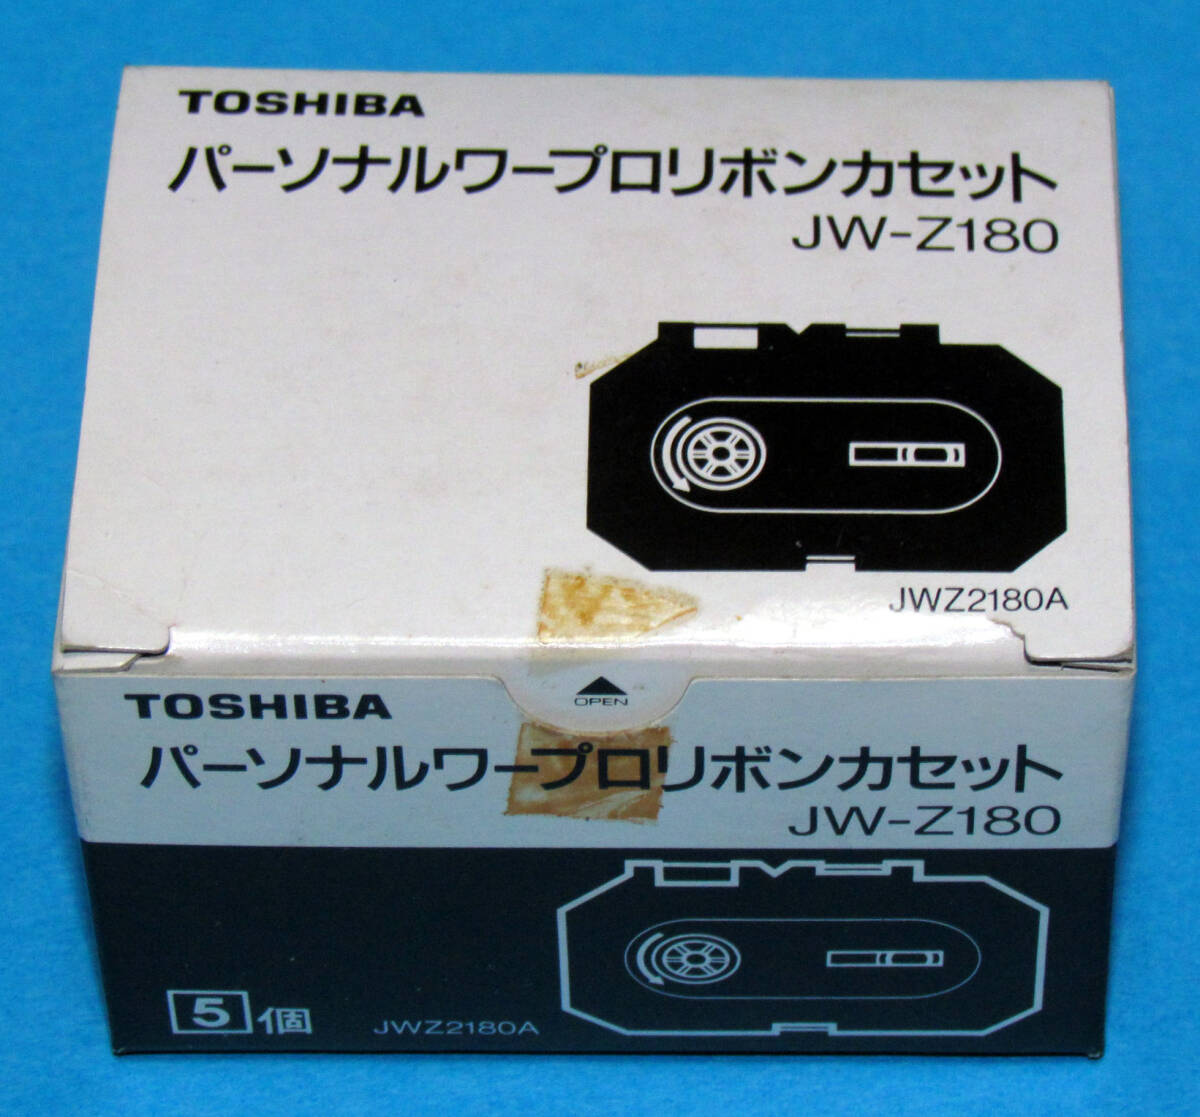 [◎TOSHIBA JW-Z180 TYPEII. 5 штук в бумажной коробке] Текущее состояние (2)